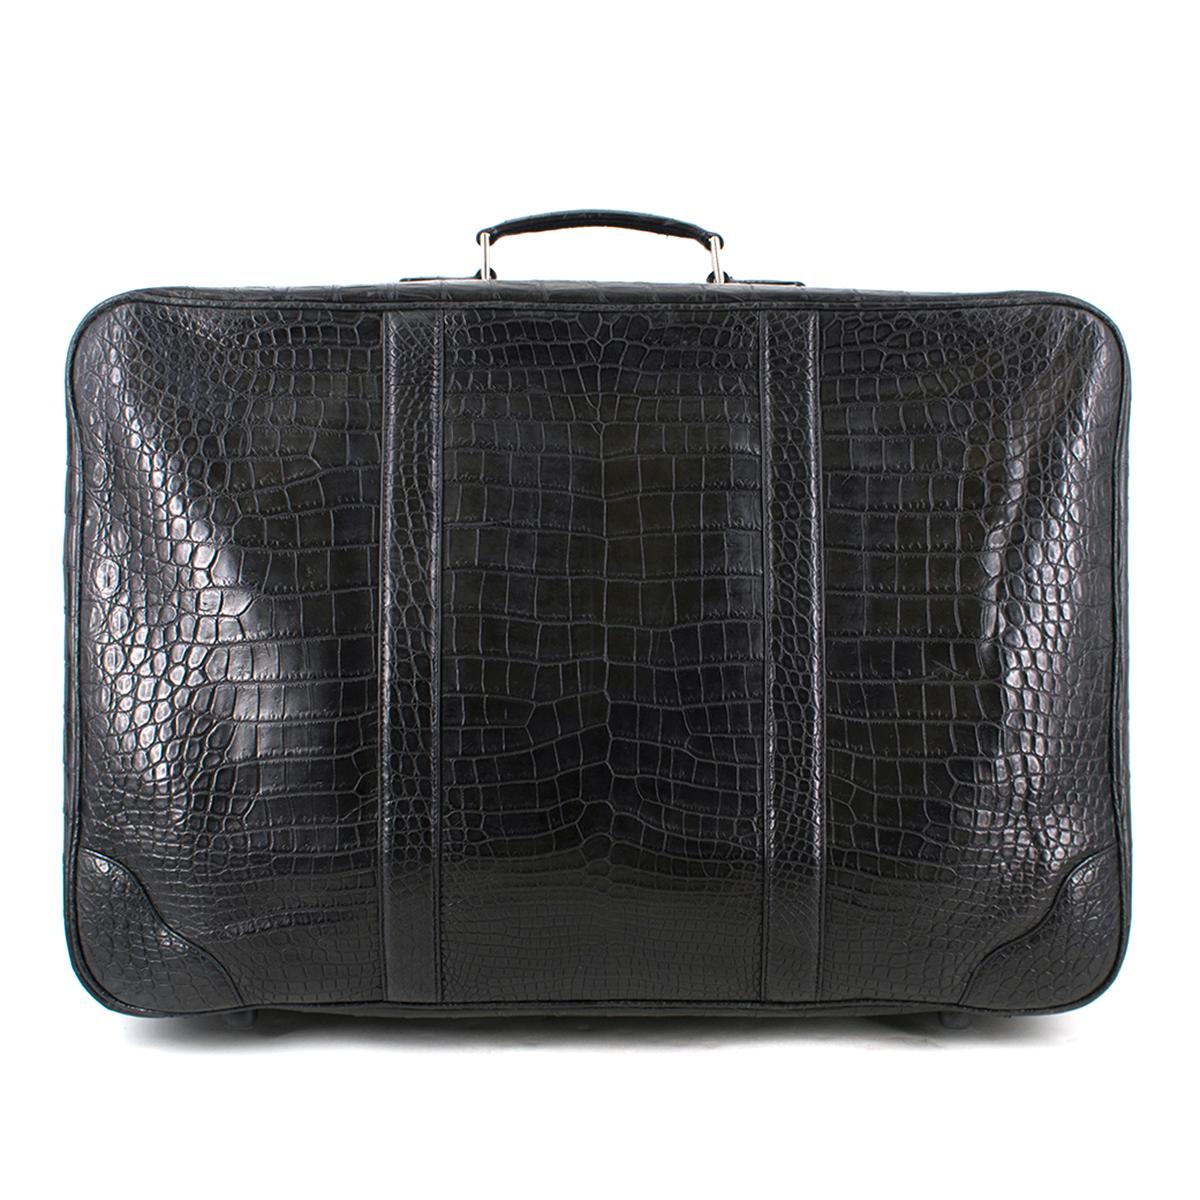 Black Bespoke large black matte crocodile leather suitcase